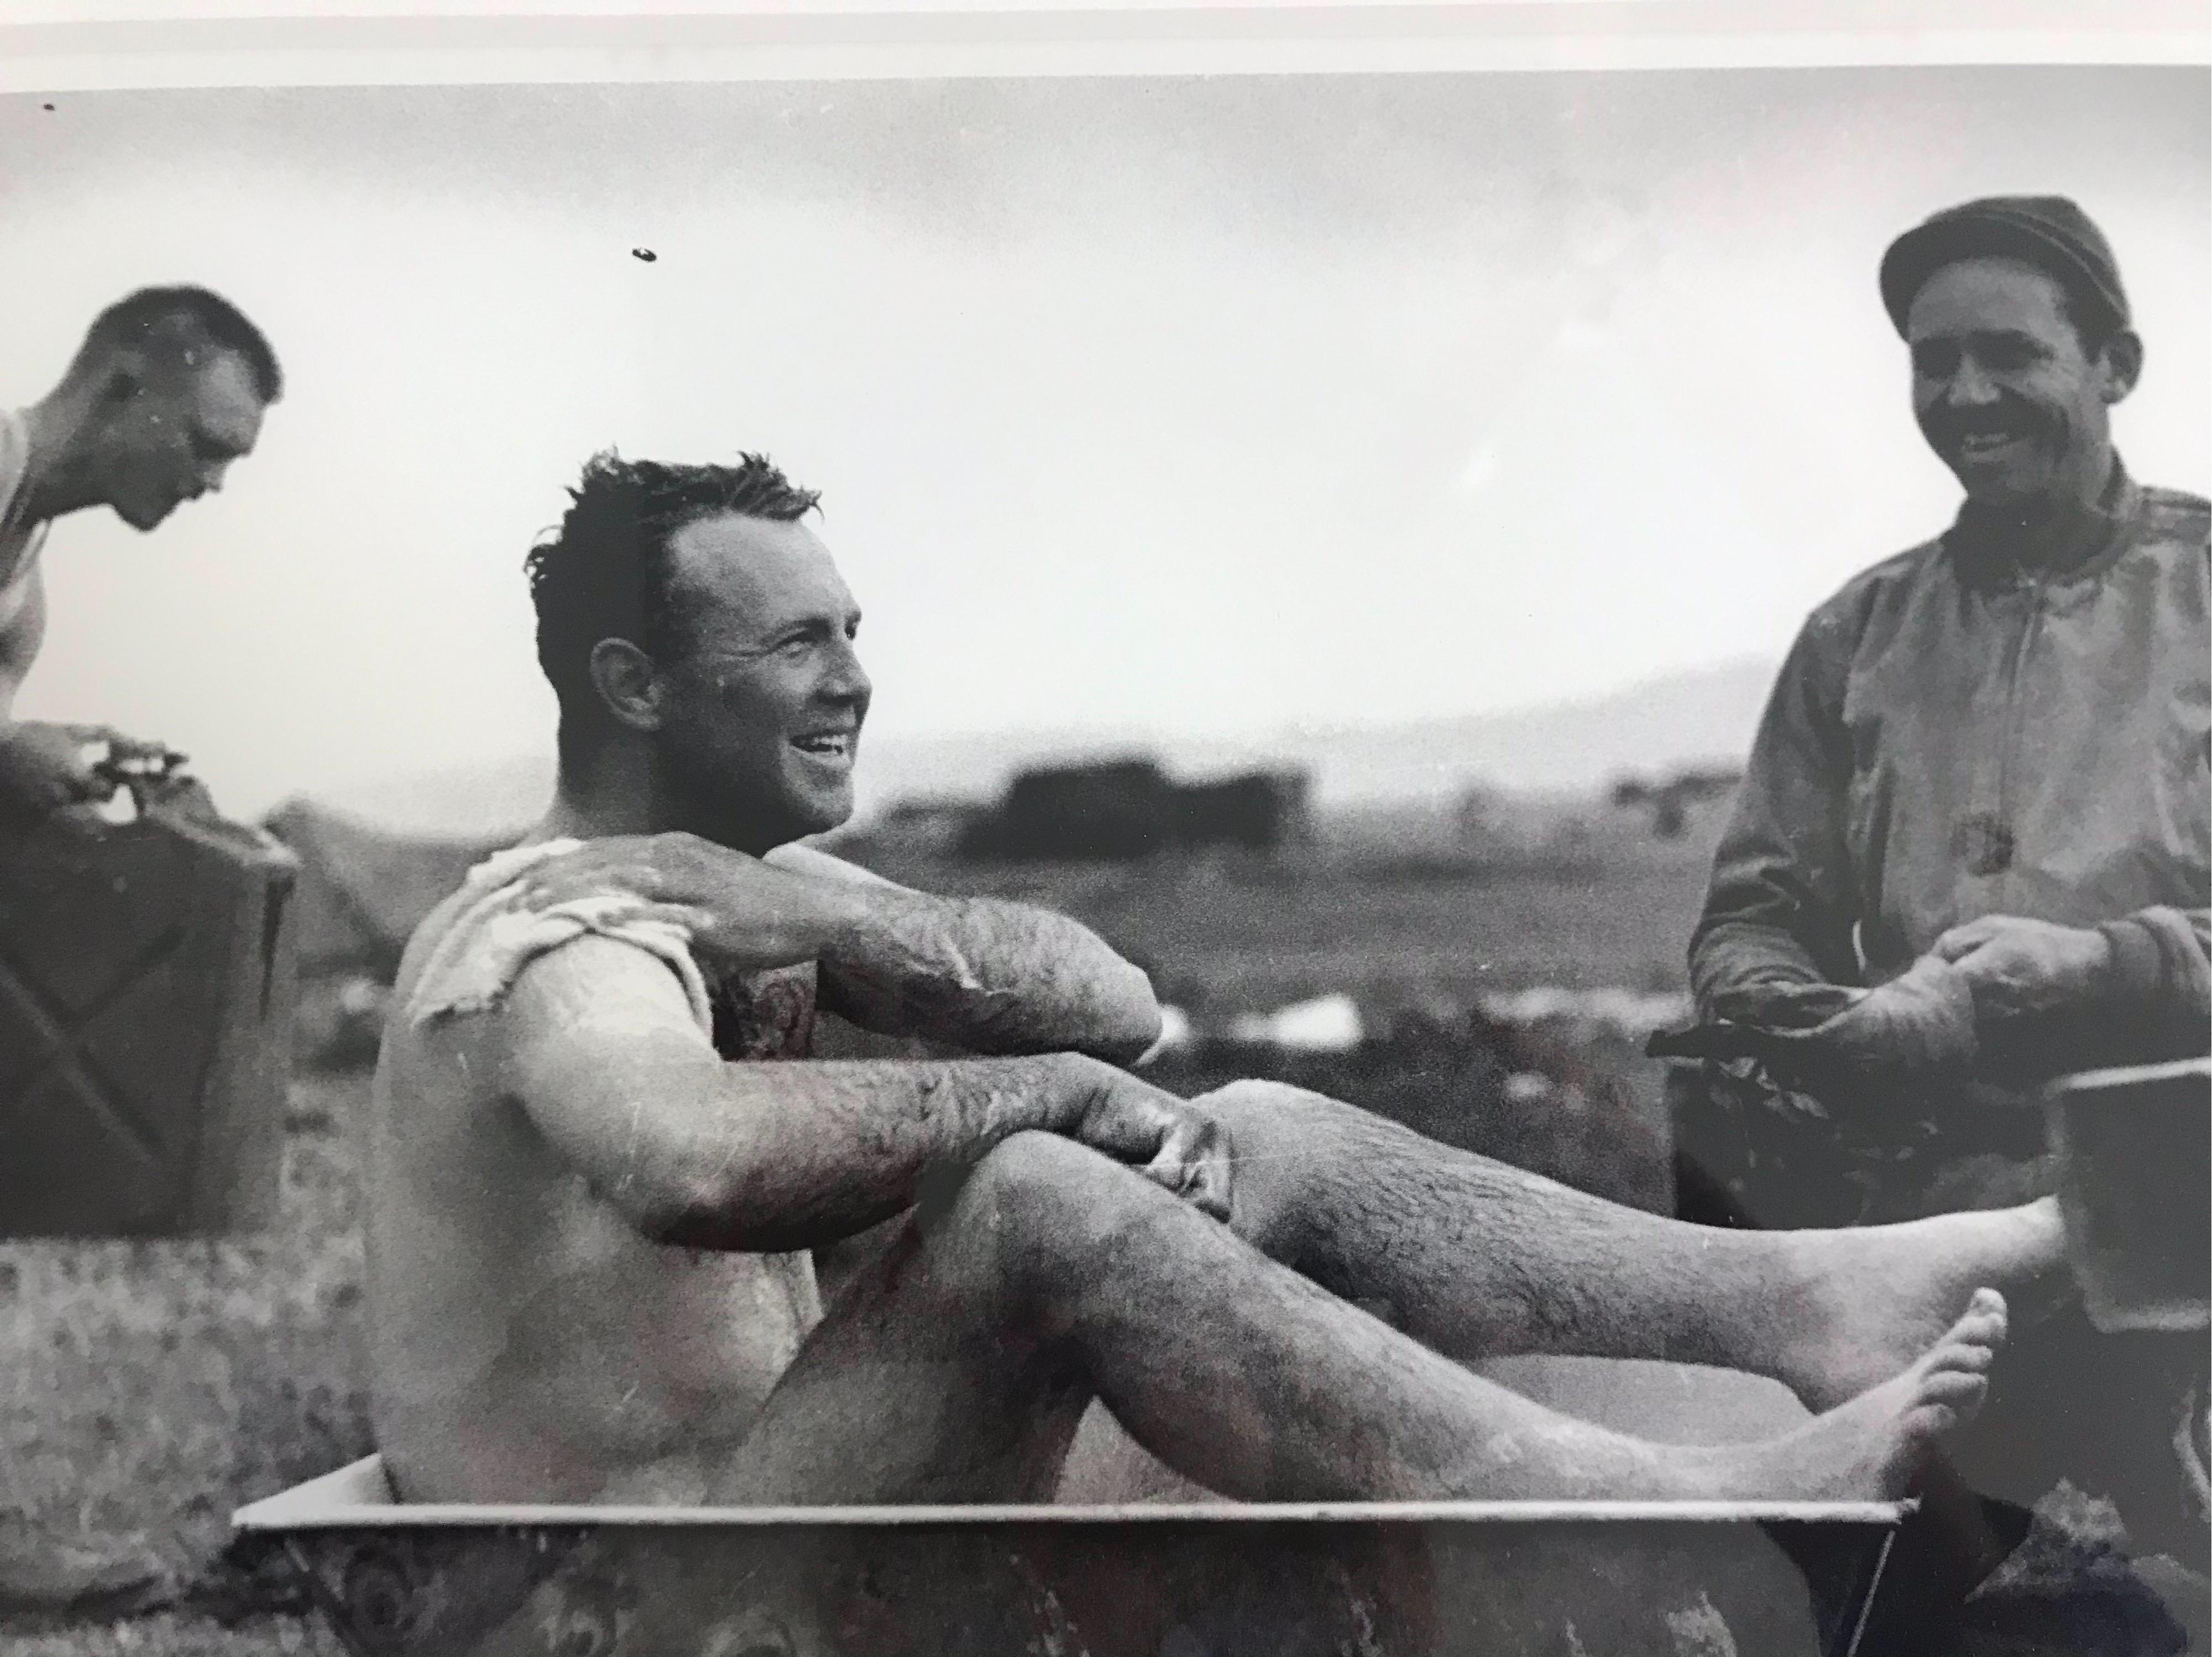 Il s'agit d'une photo unique de la Seconde Guerre mondiale prise par le photographe hollywoodien Phil Stern dans les années 1940. Cette photo représente l'un des Darby Rangers se baignant dans une baignoire pendant la guerre. Cette photo a été prise